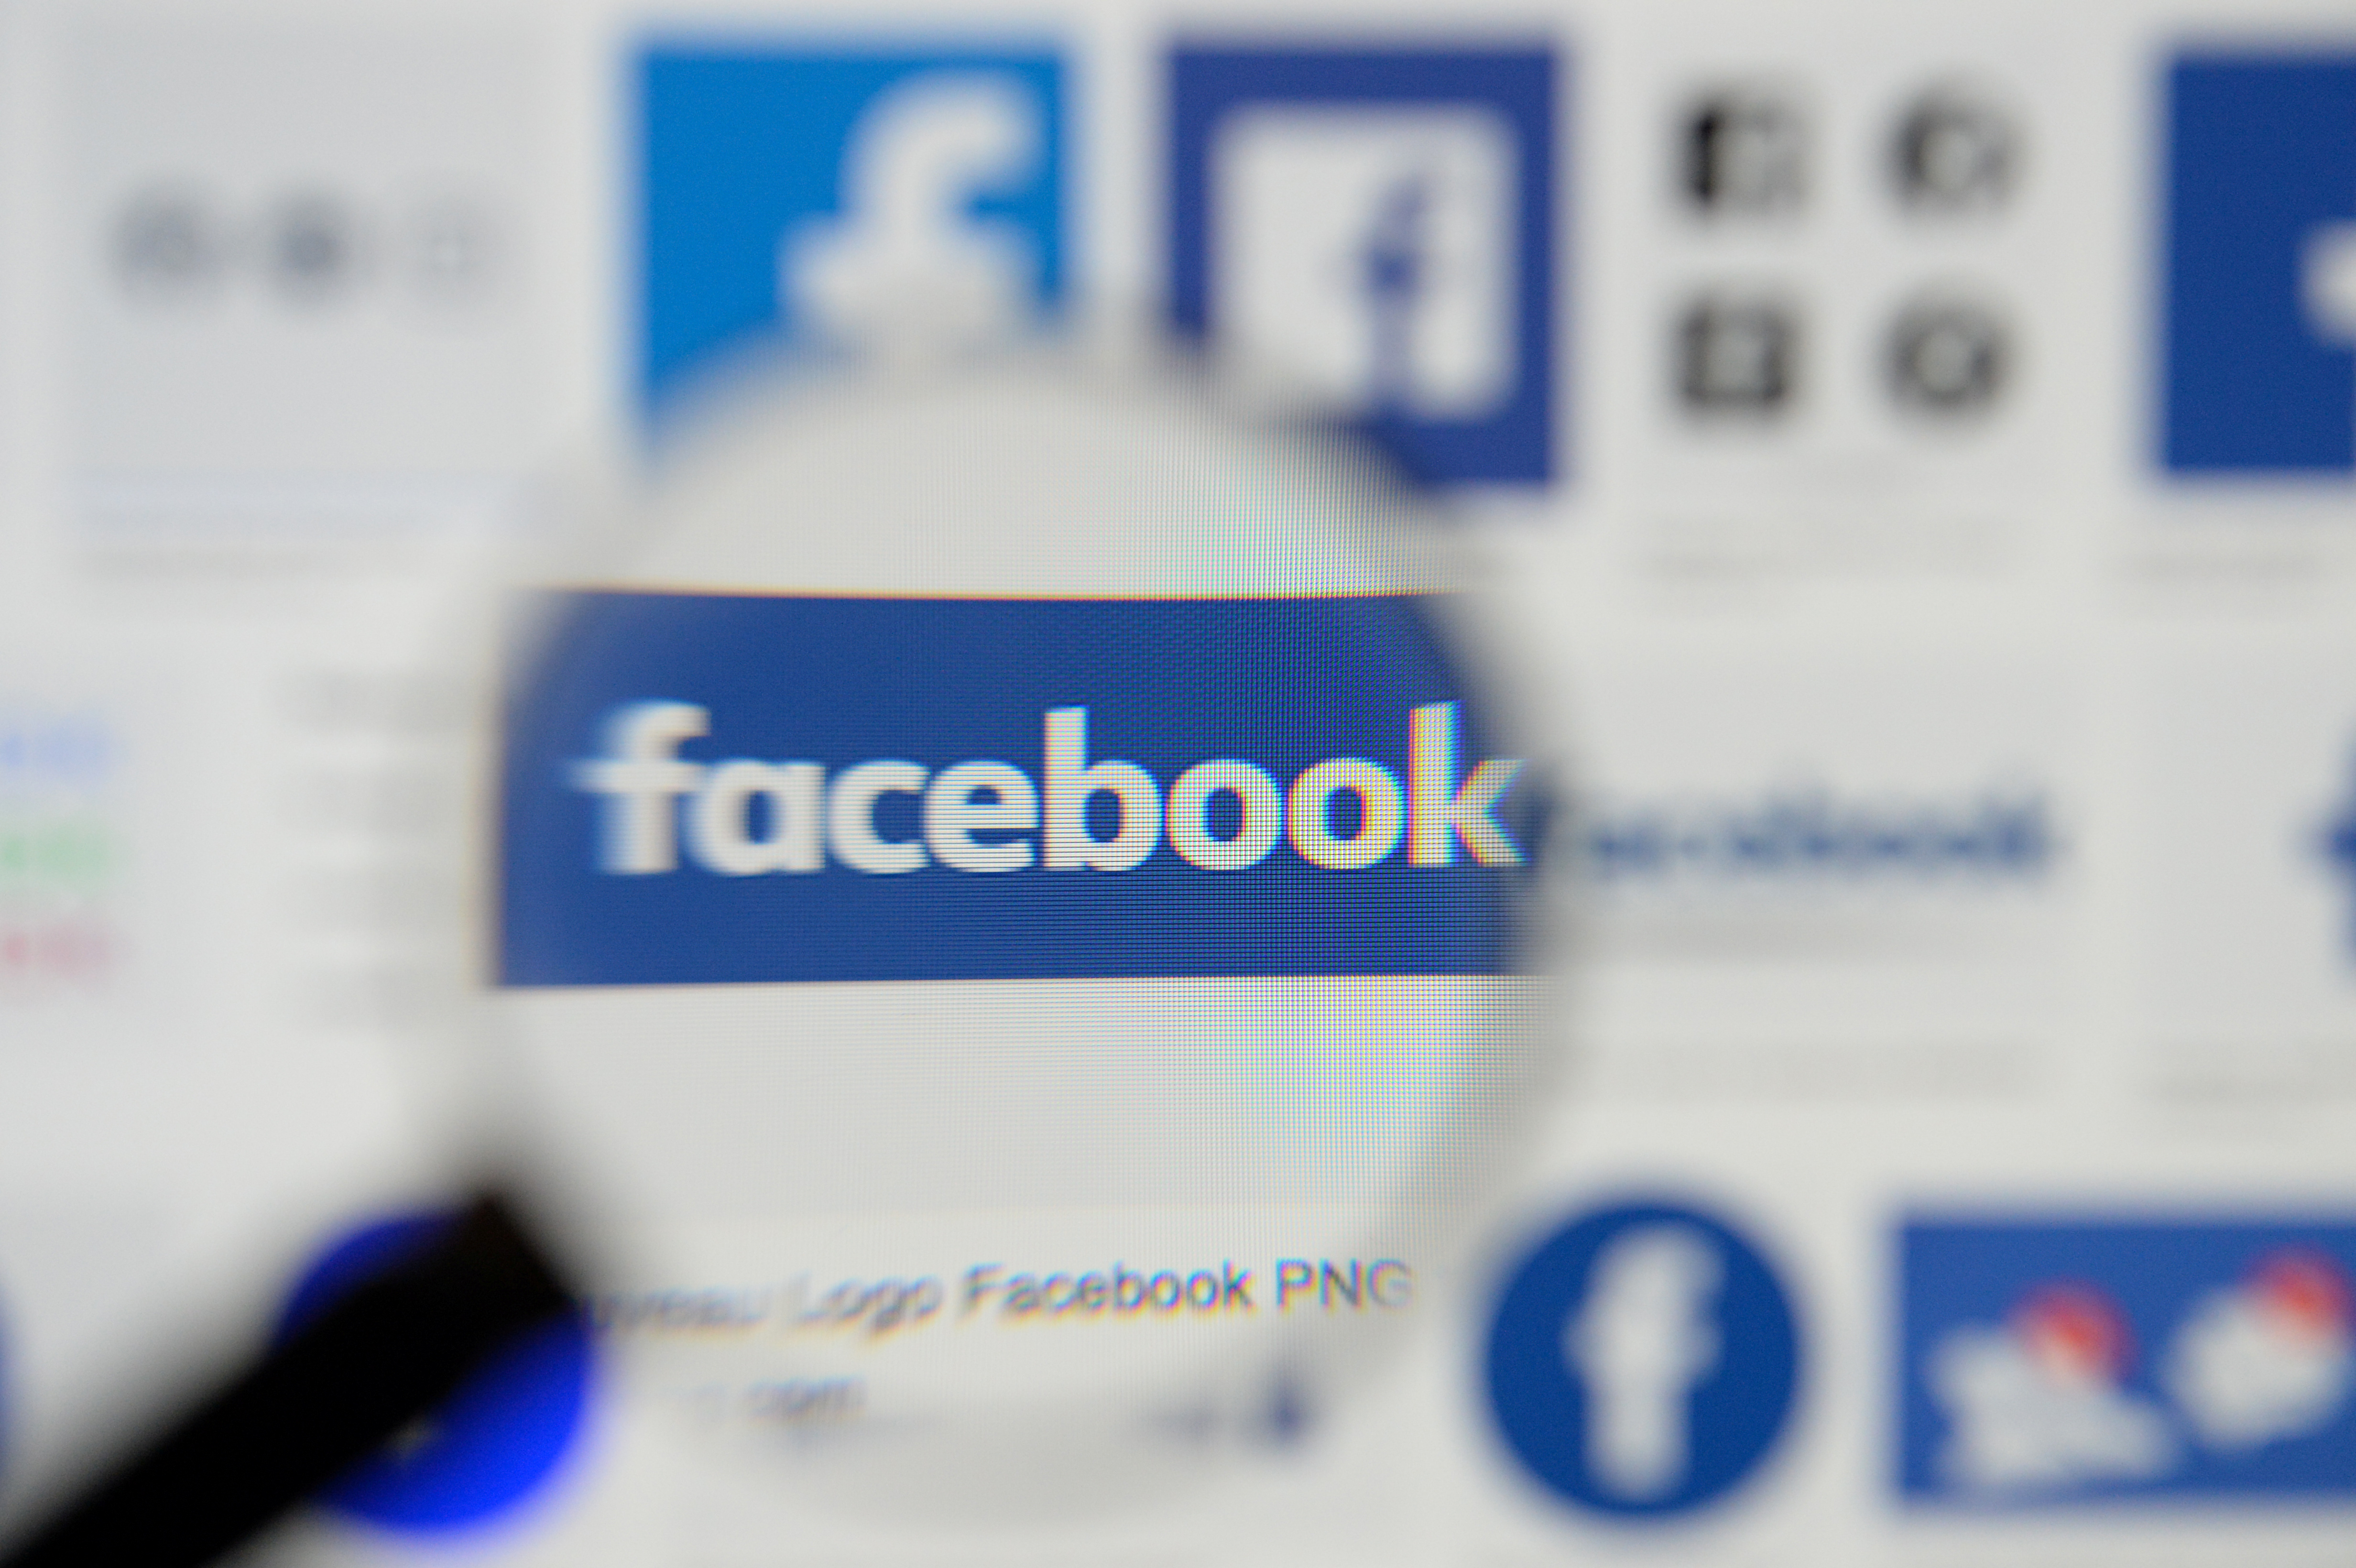 Facebook fue demandado por monopolio en EEUU (REUTERS/Johanna Geron/Illustration)